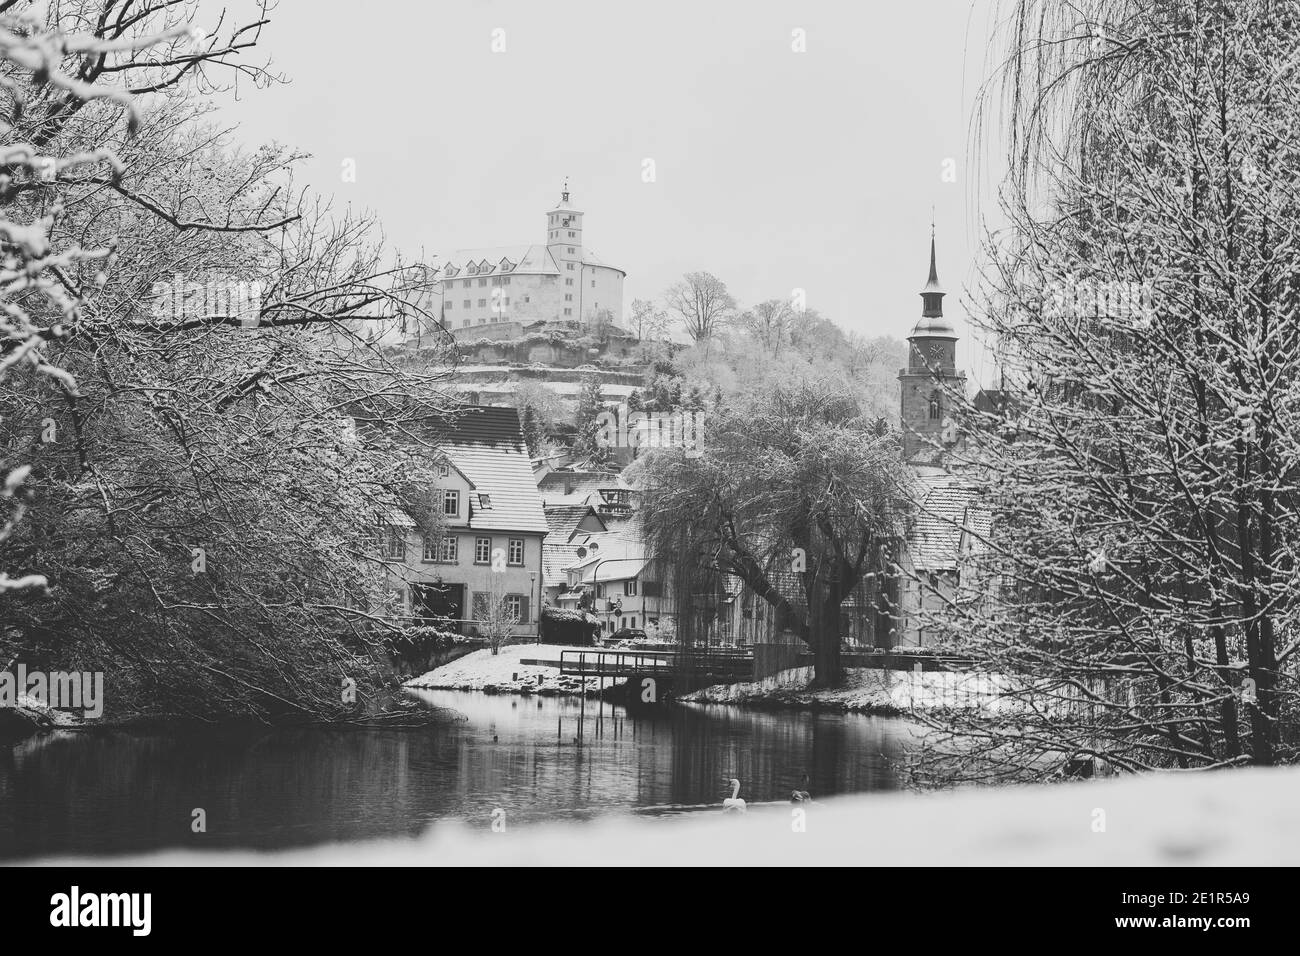 Schloss Kaltenstein en milieu d'hiver, vêtu de neige en noir et blanc Banque D'Images